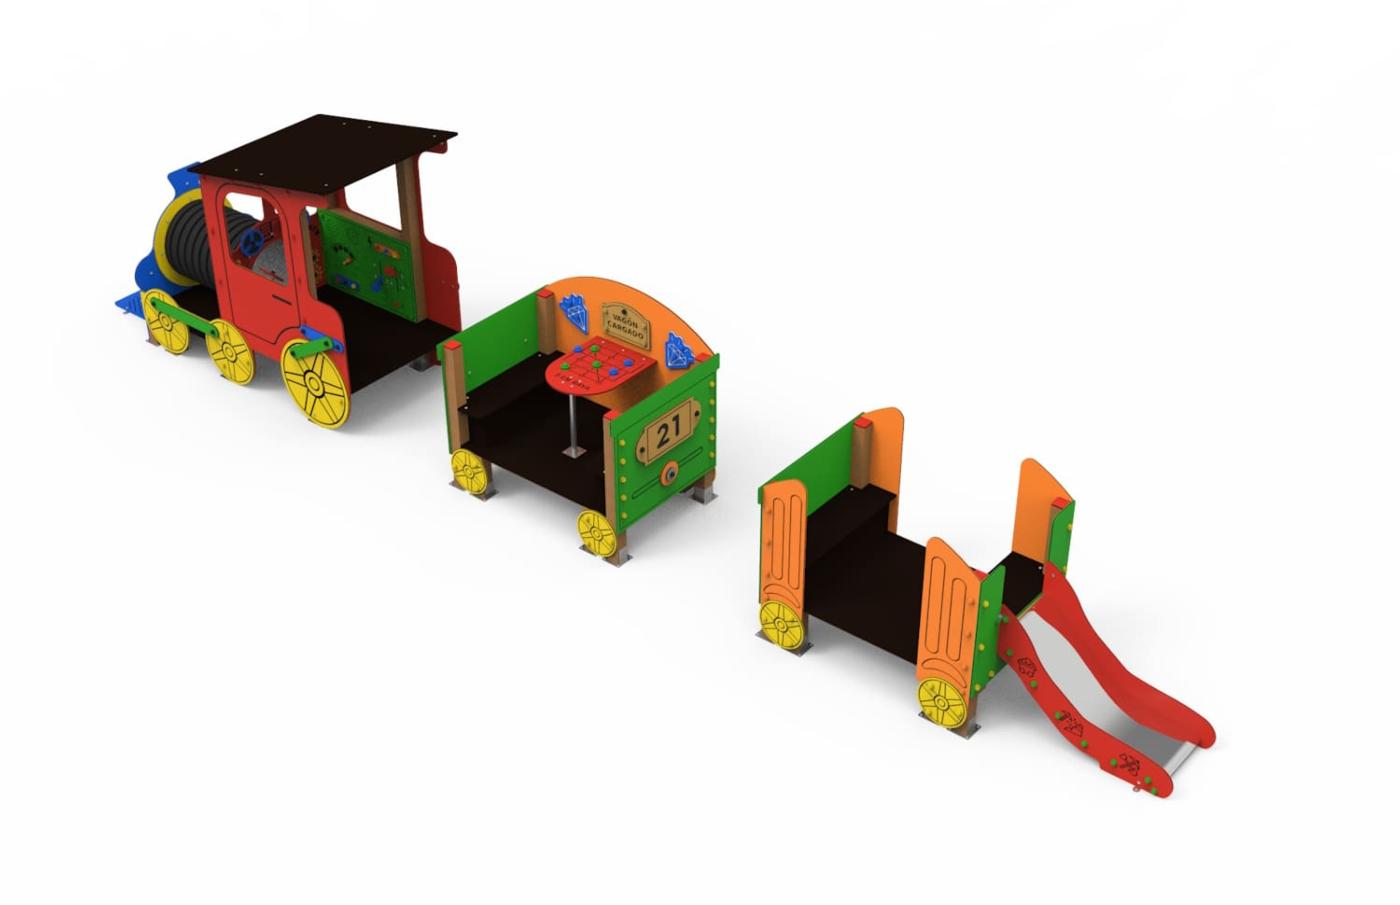 Parque infantil do comboio mineiro: locomotiva + 2 vagões